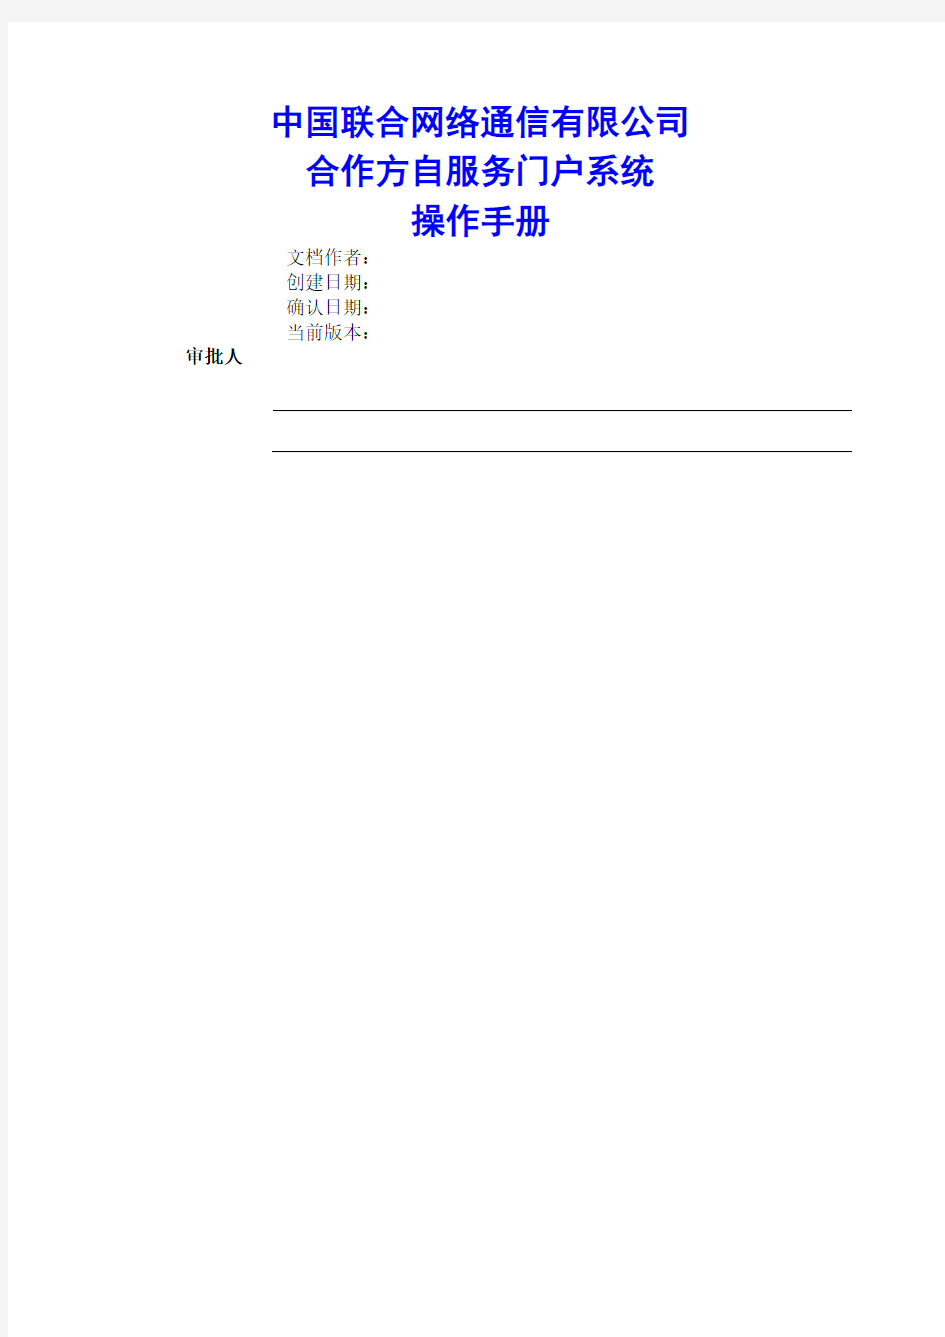 中国联通合作方自服务门户系统操作手册合作方人员操作V